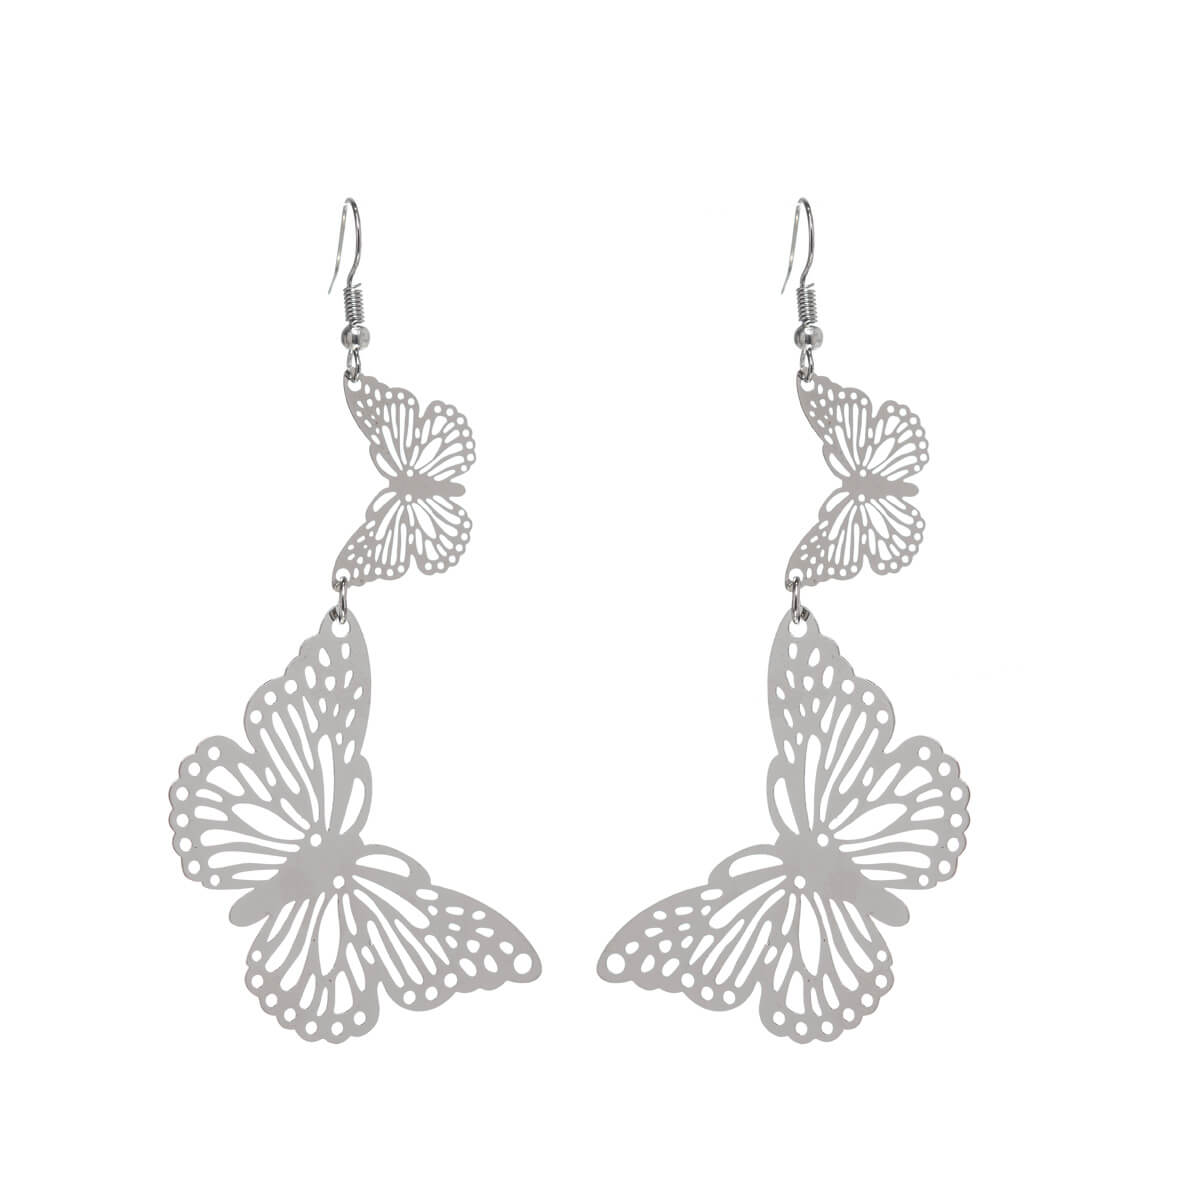 Patterned hanging earrings butterfly